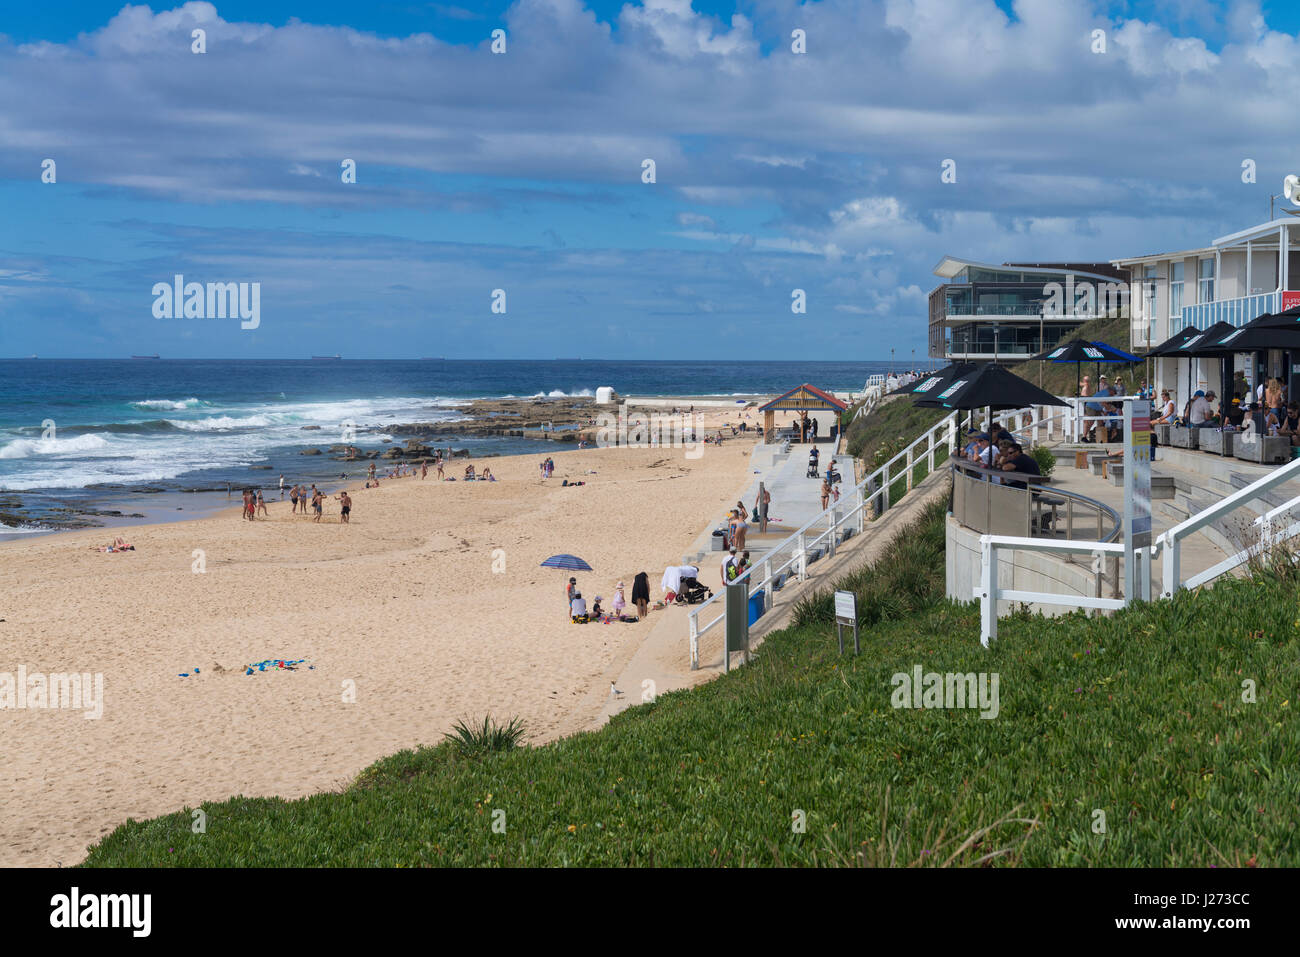 Merewether Surf Club, Newcastle, New South Wales, Australie, surplombe la plage et l'océan Pacifique sous un ciel bleu. Banque D'Images